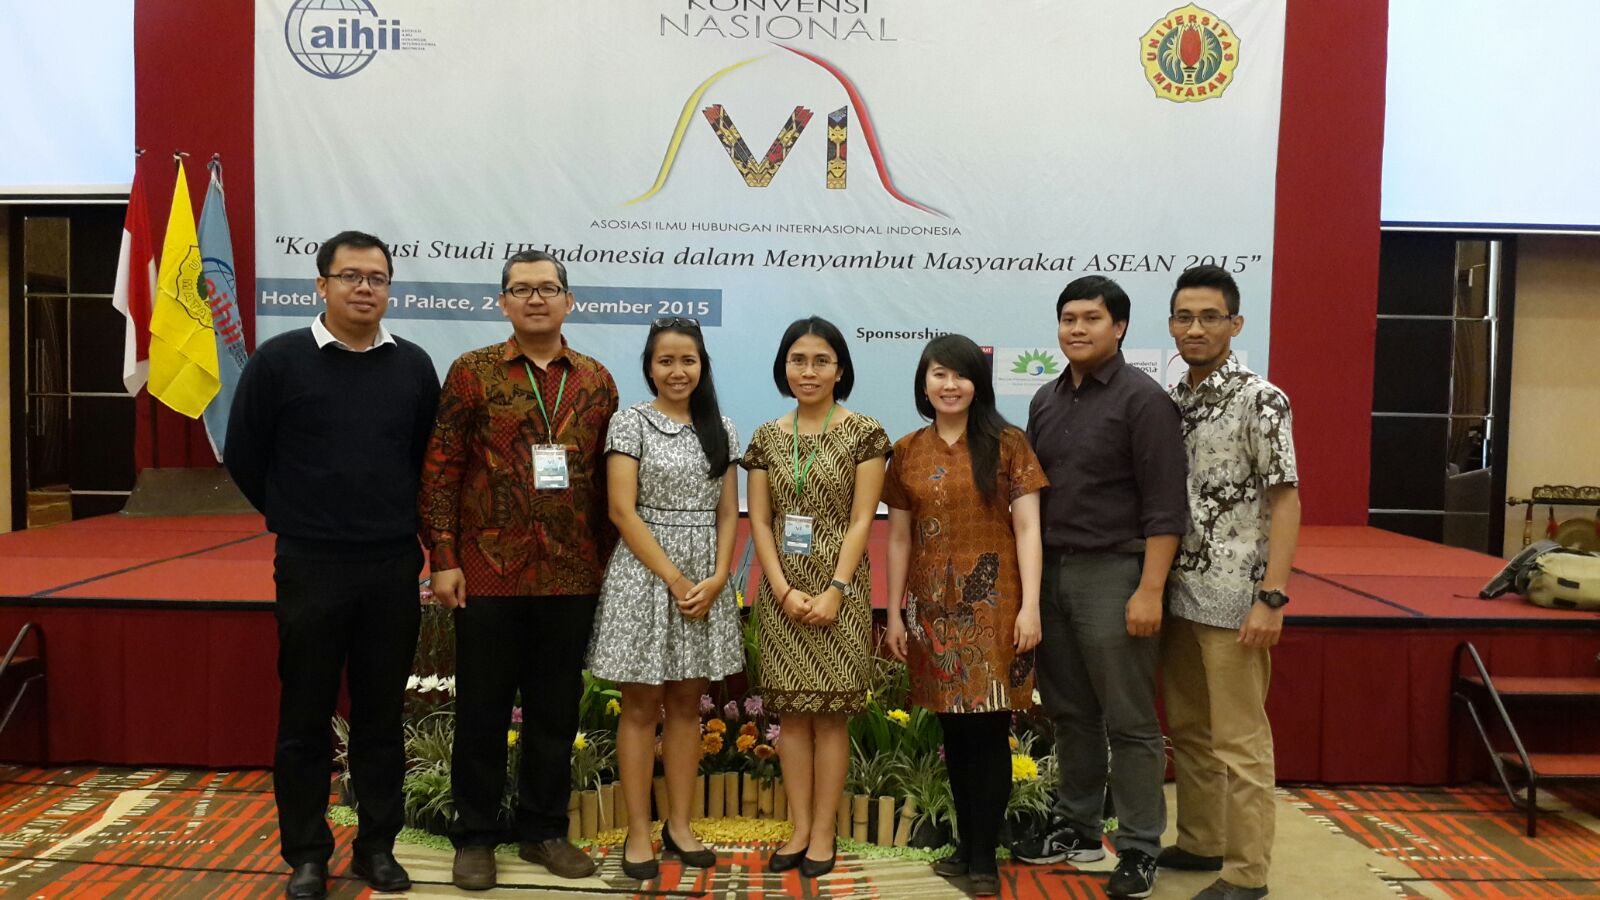 Desember: Delegasi HI Binus dalam Konvensi Nasional VI di Lombok